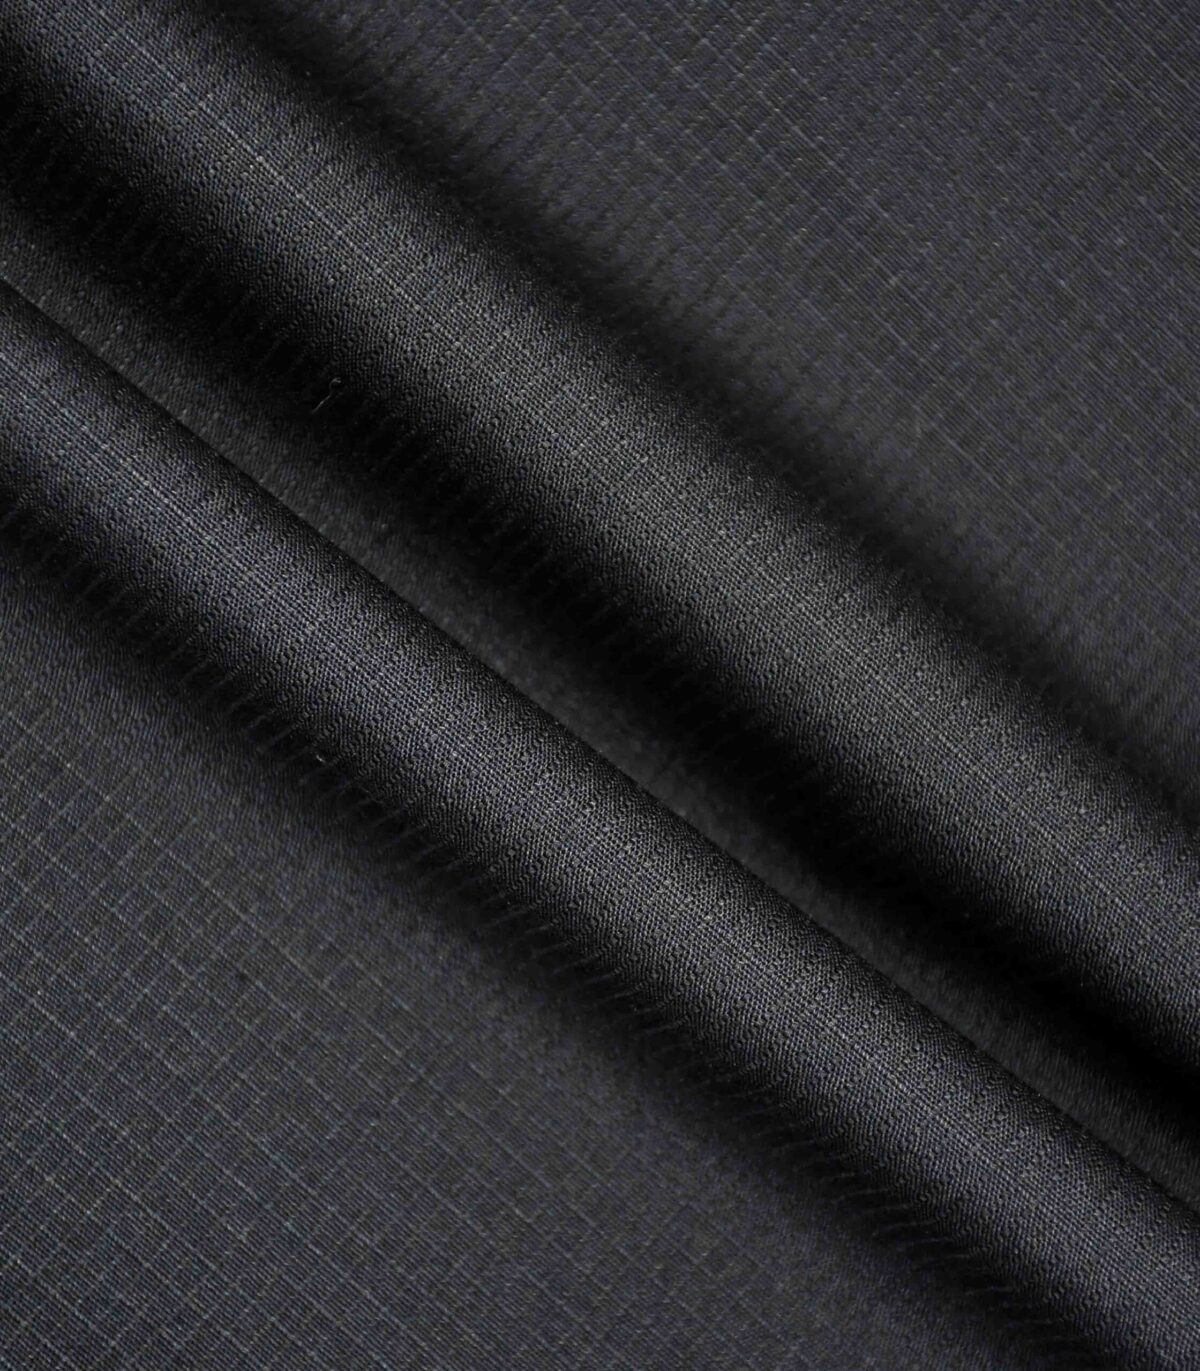 Black Color Solid Cotton RibStop Fabric